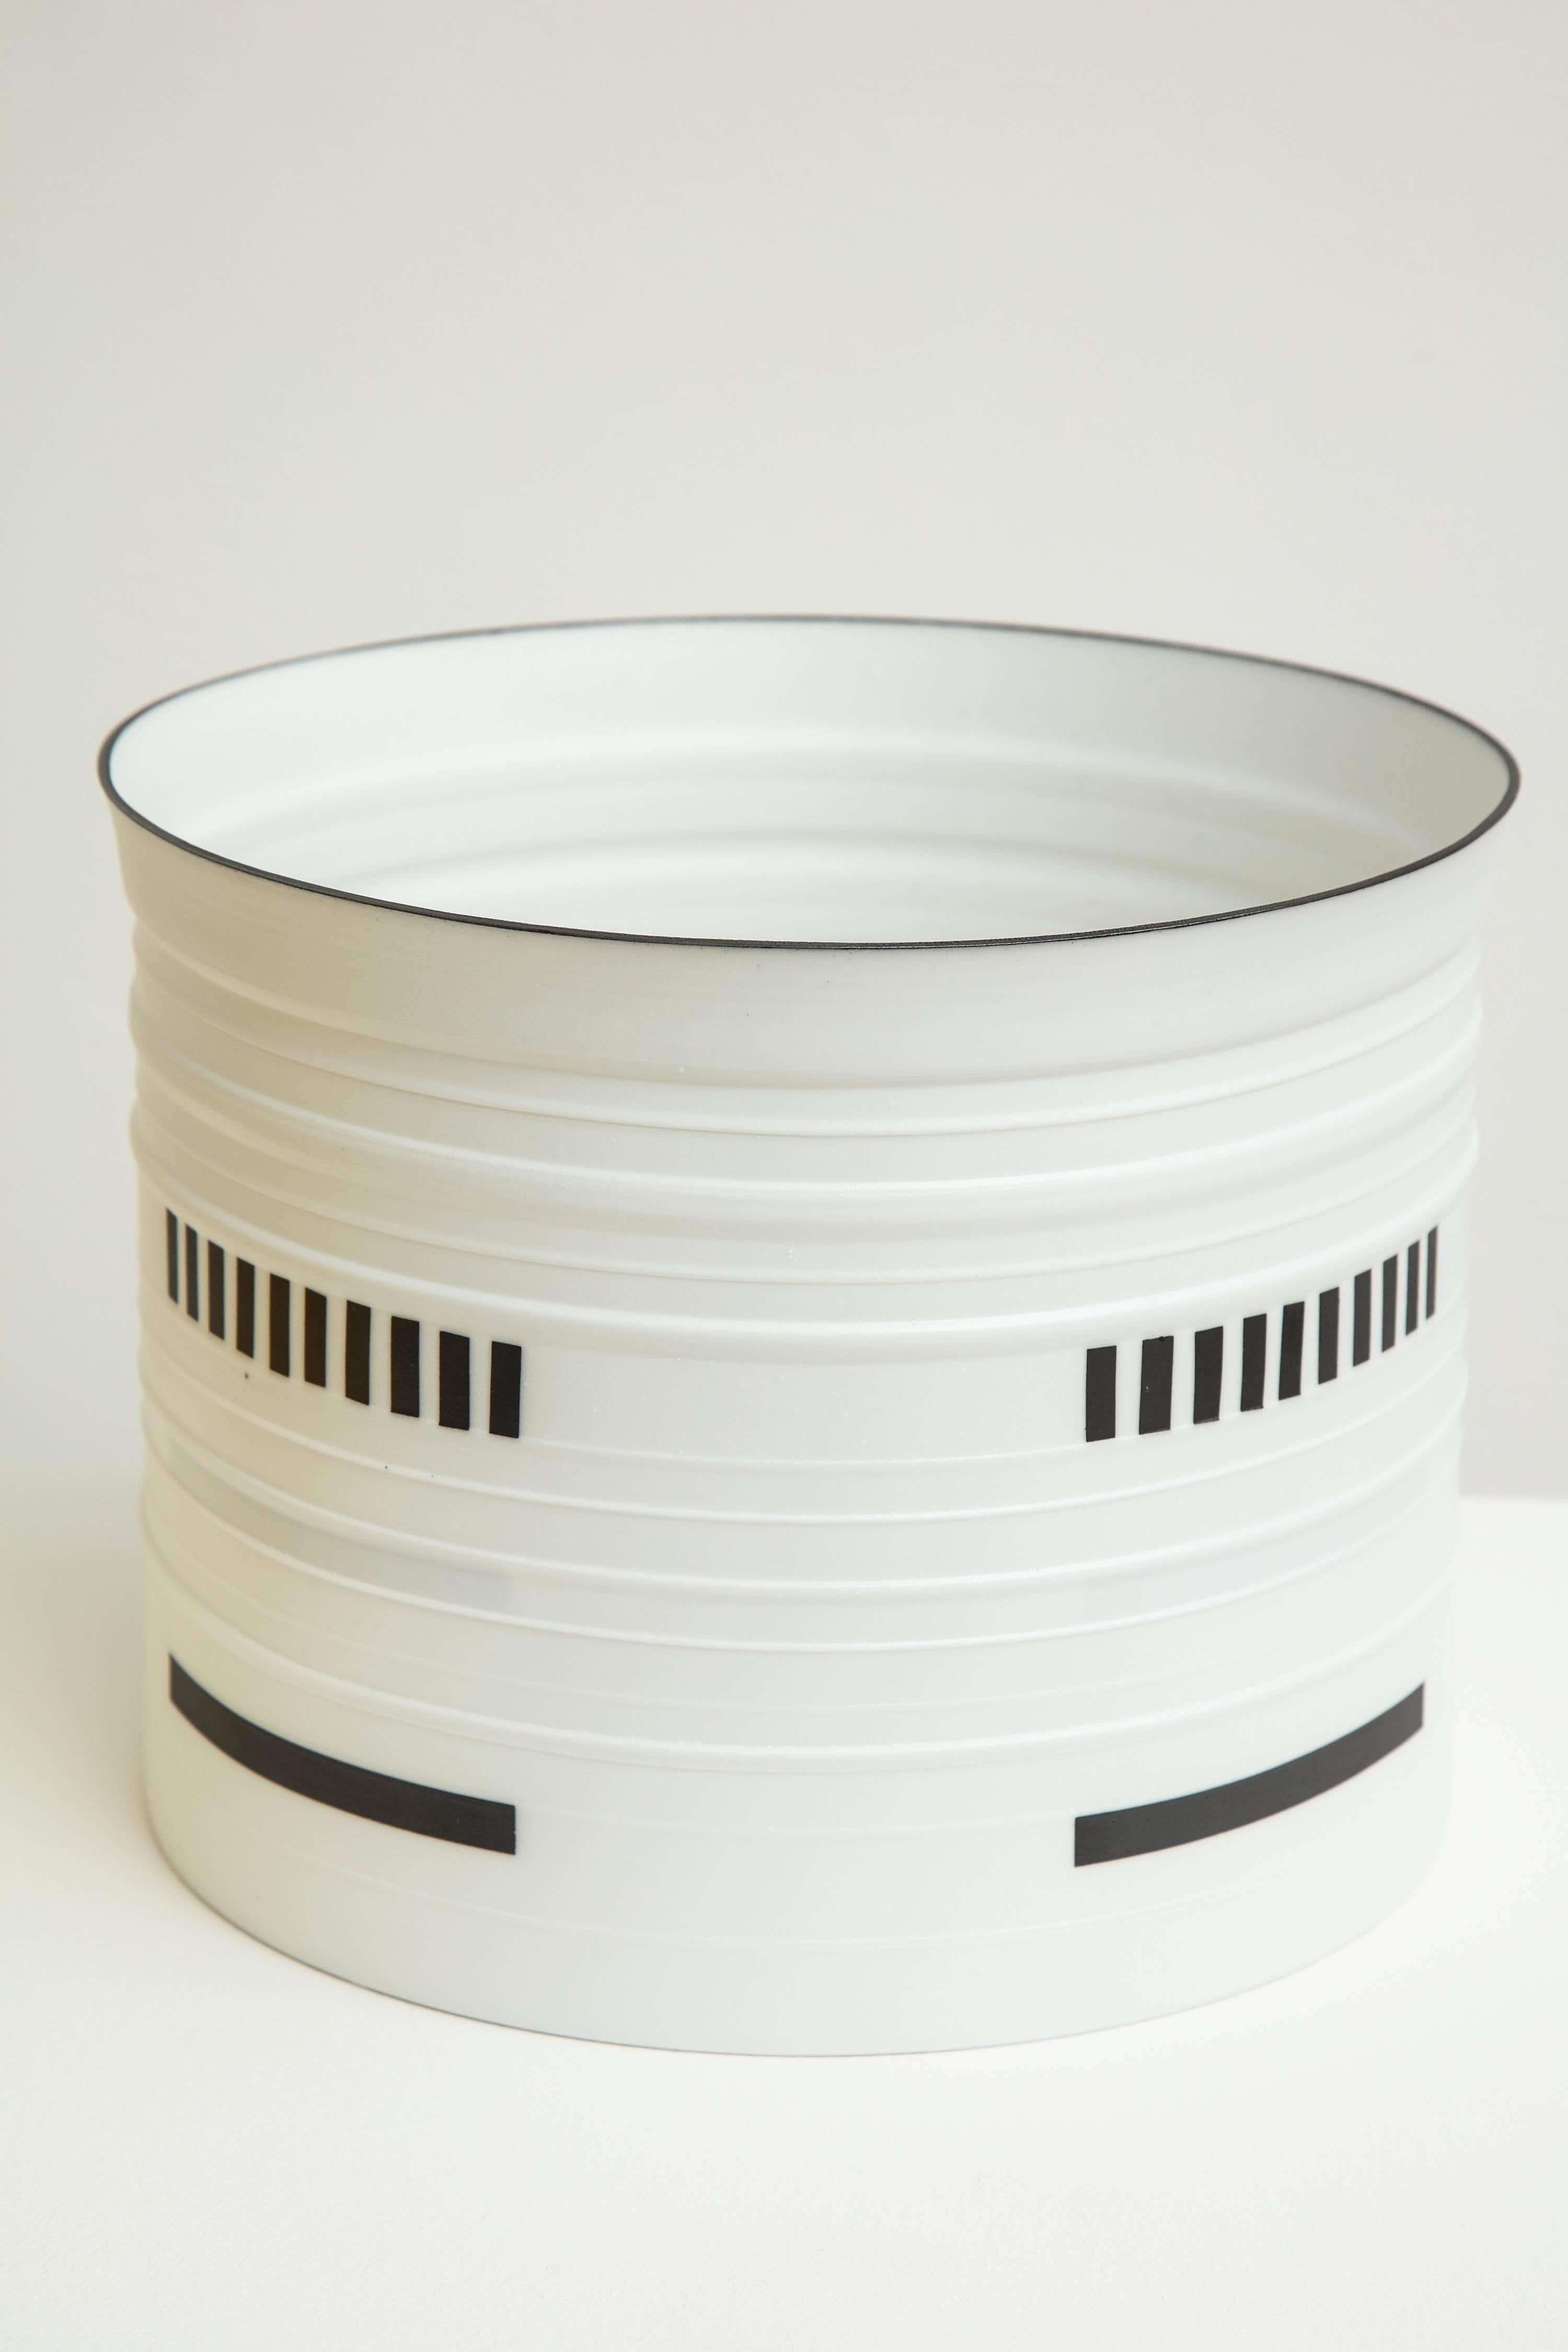 Bodil Manz: schwarzes und weißes Porzellangefäß, hergestellt in Dänemark